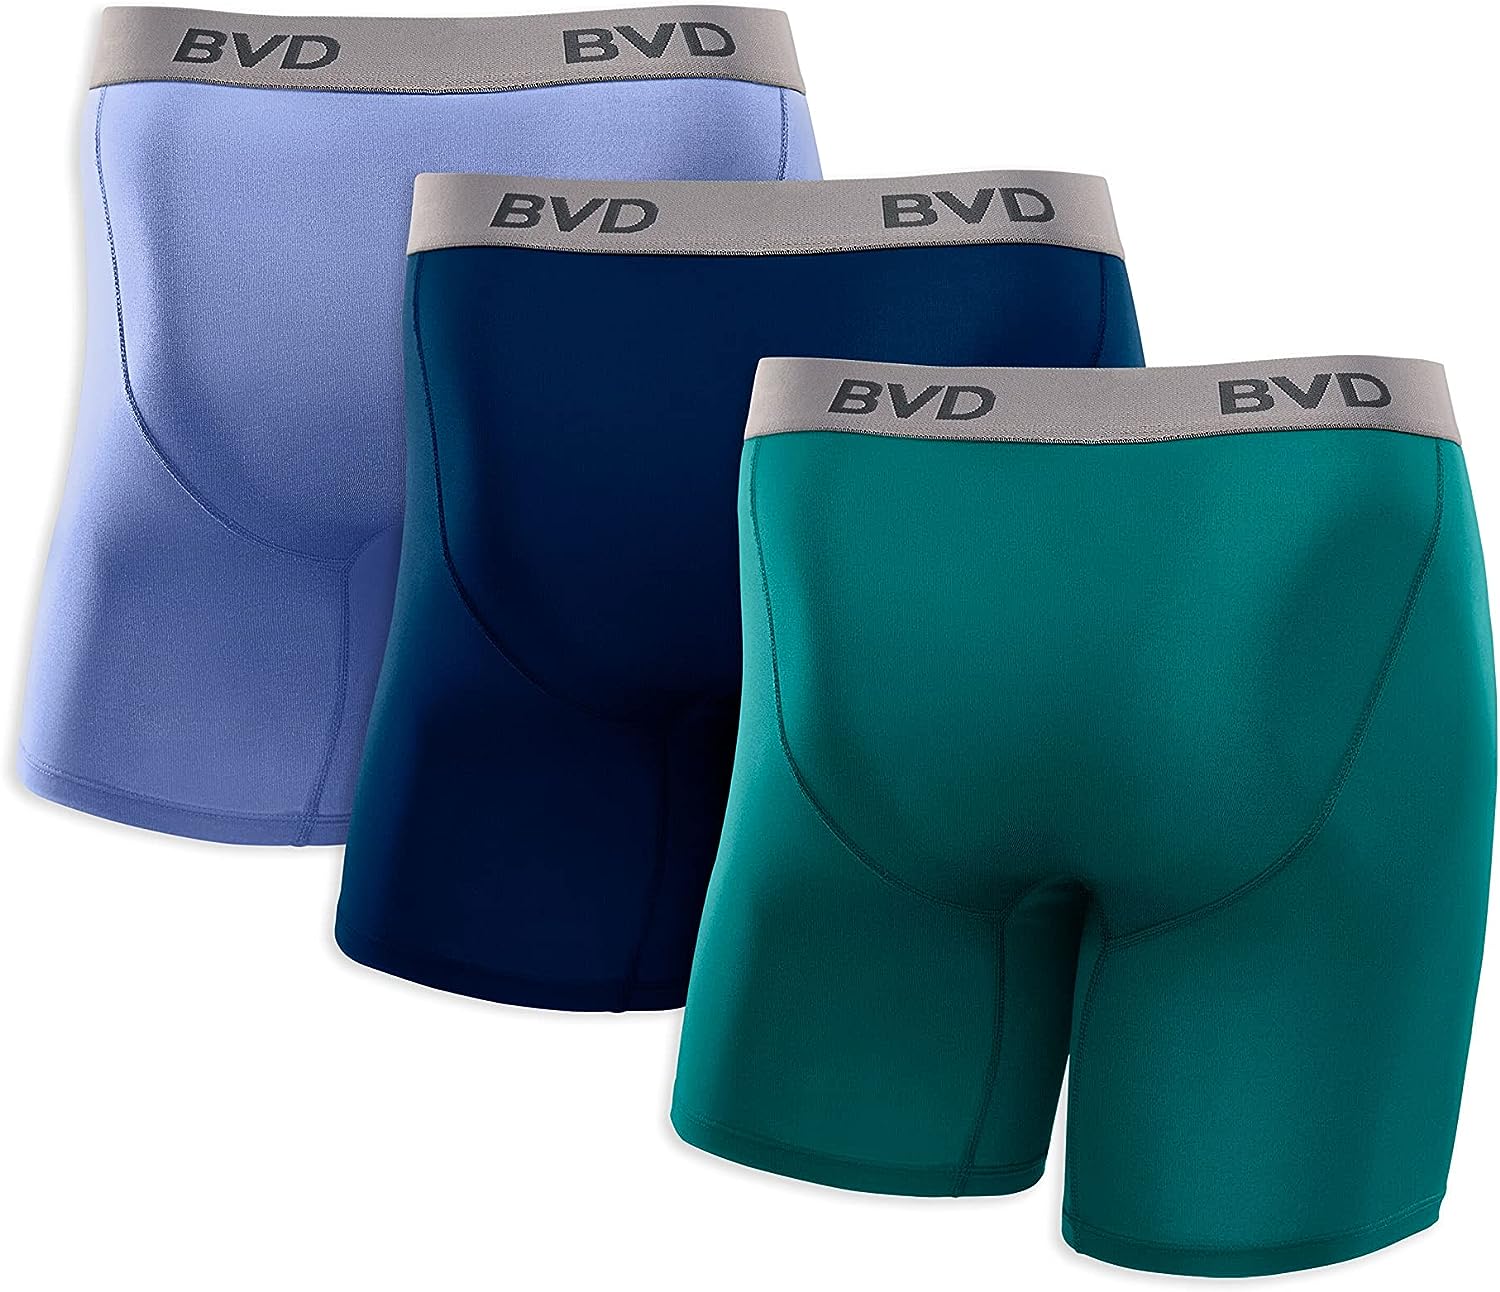 What Is BVD Underwear